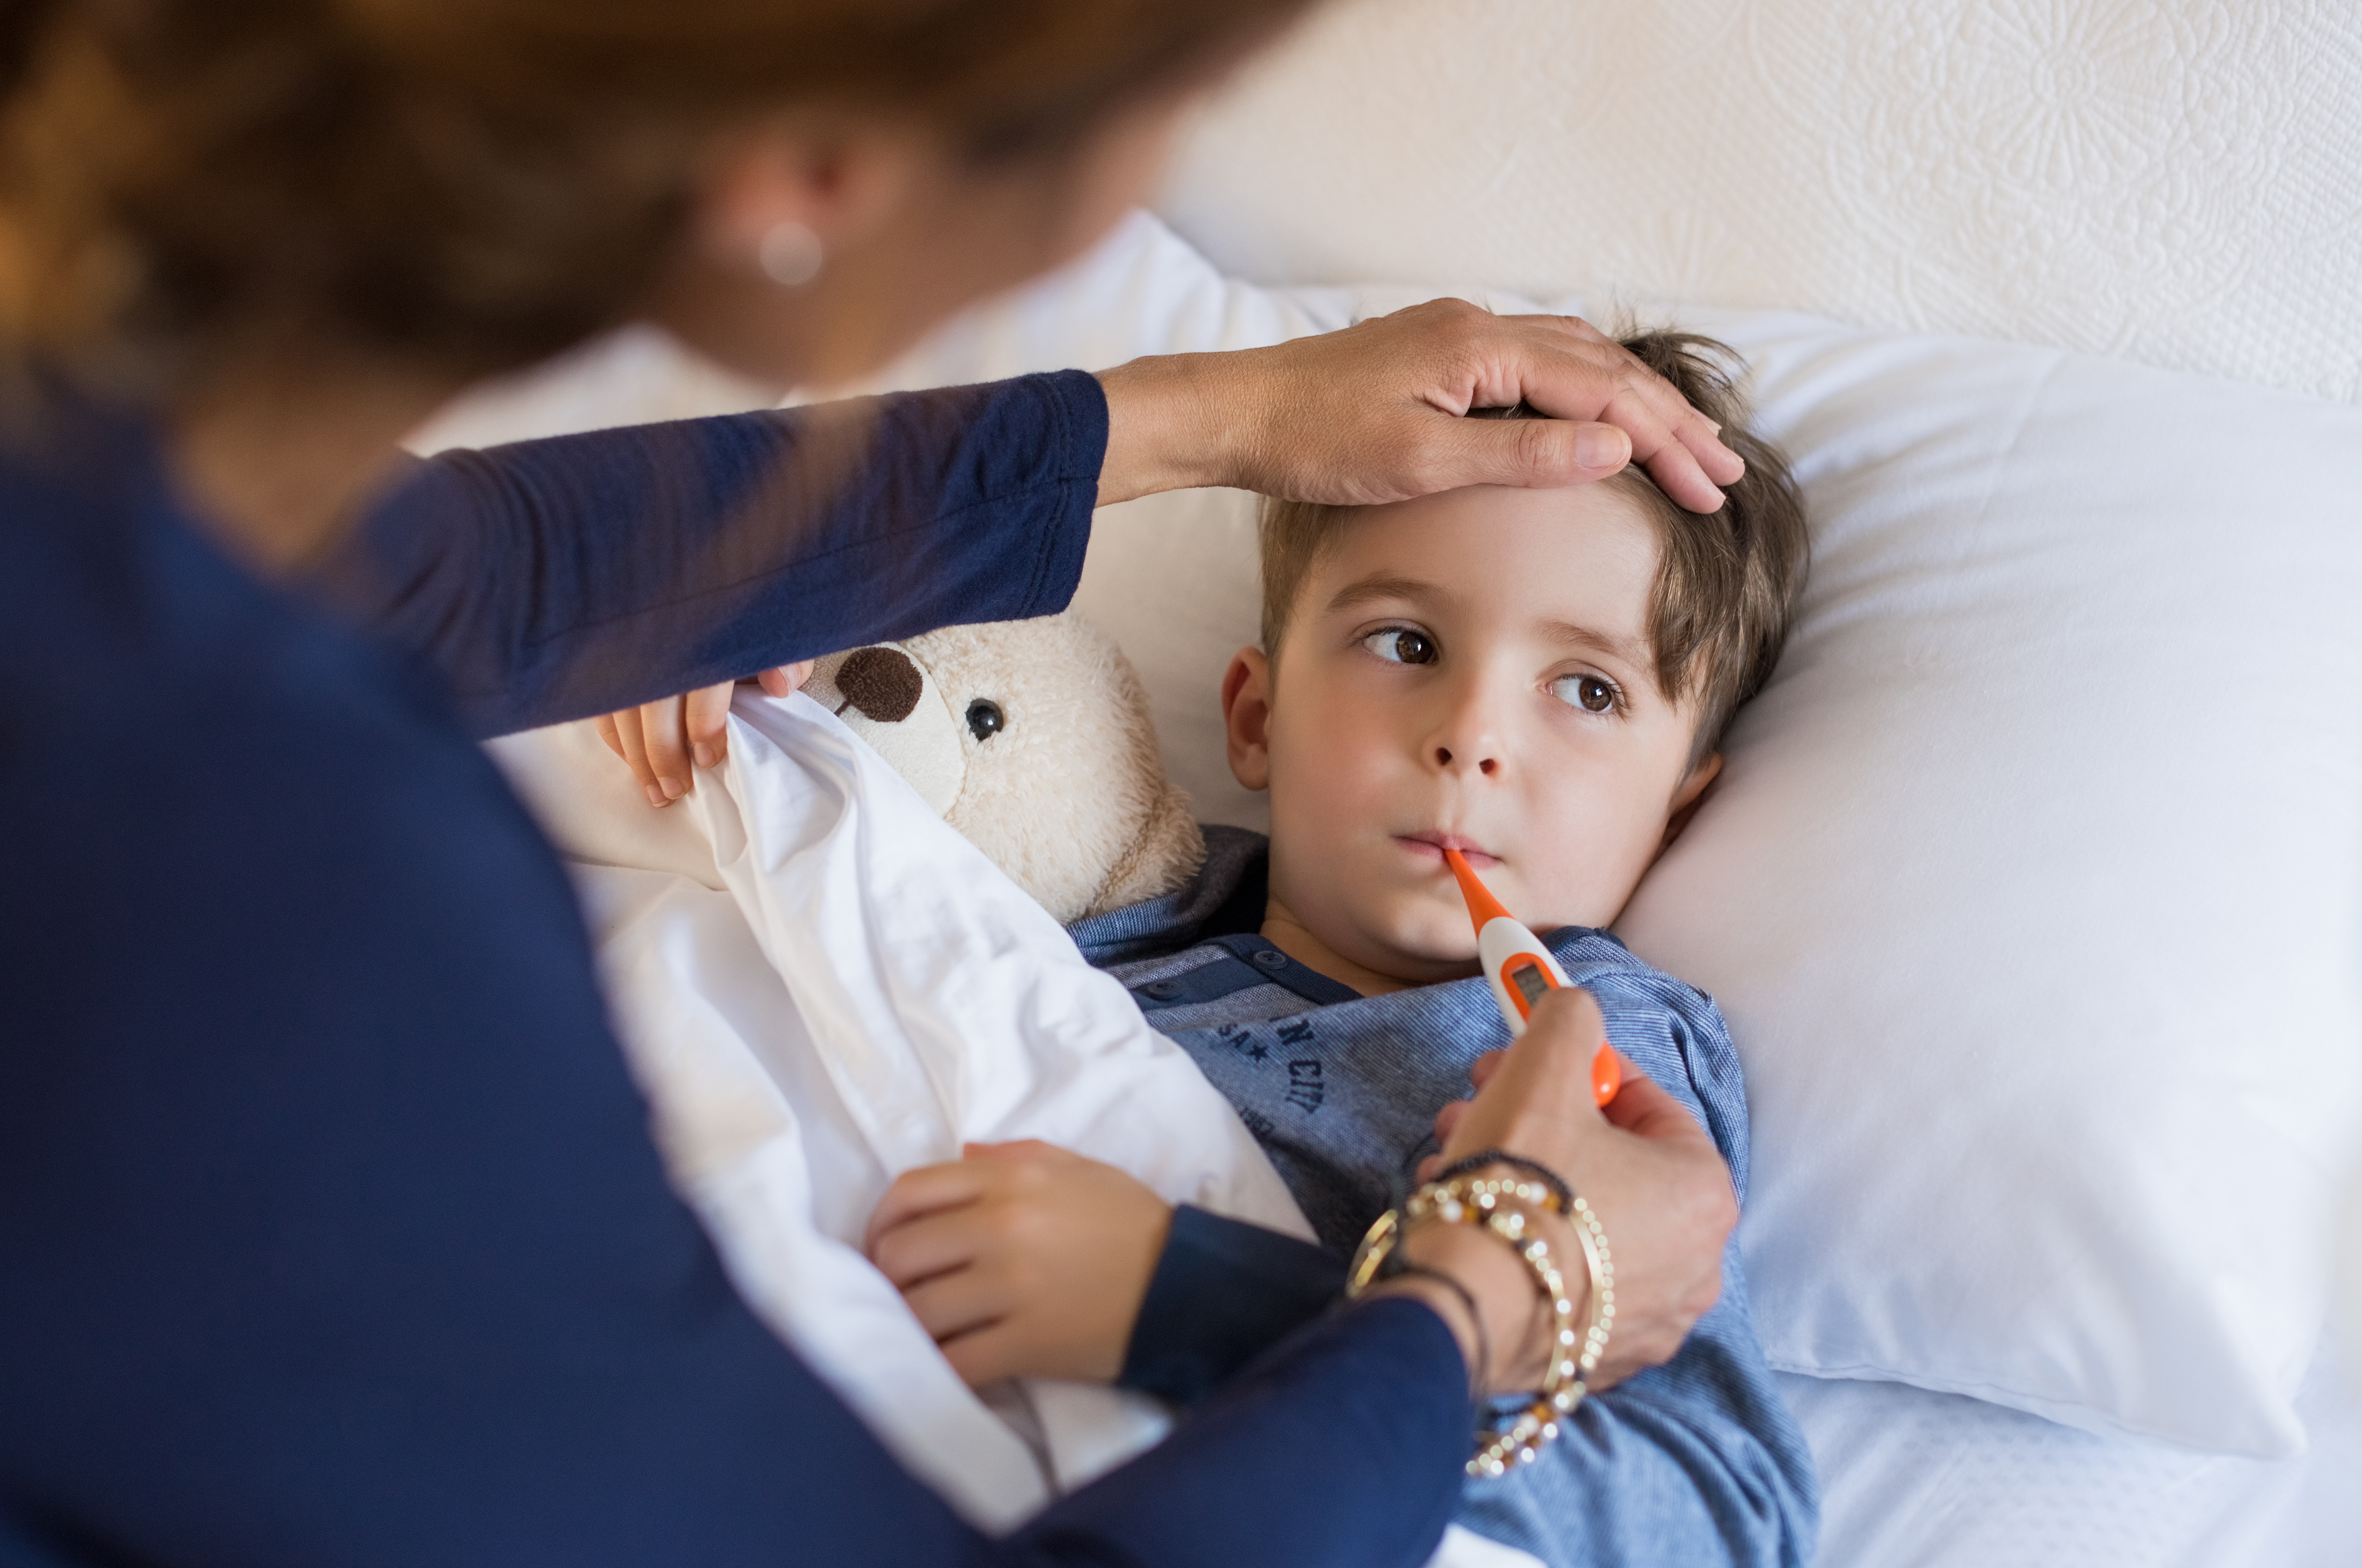 Lavados nasales en niños: lo que debes saber - Eres Mamá